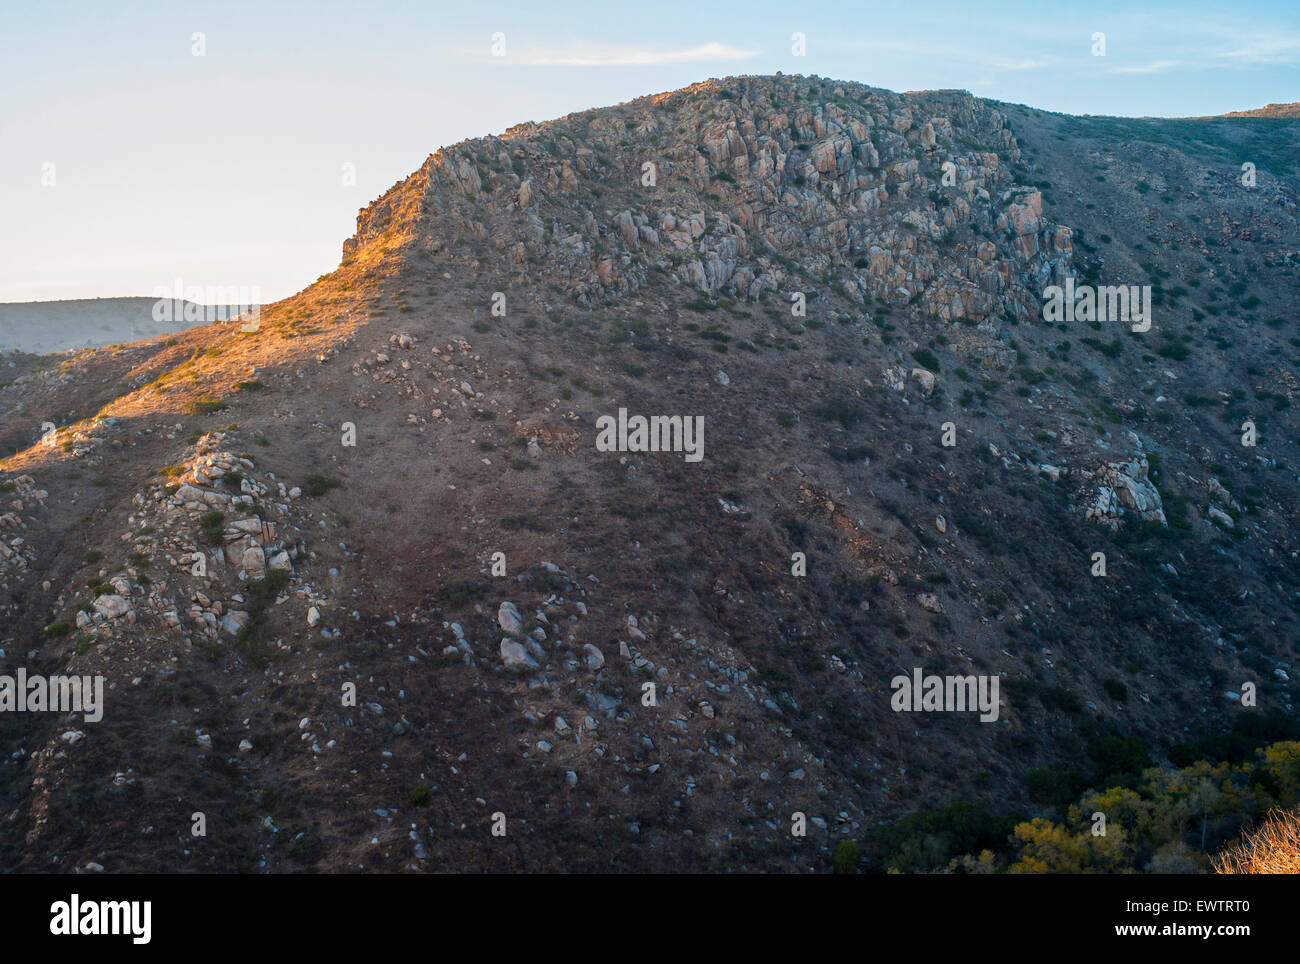 Puesta de sol sobre colinas rocosas en Mission Trails regional park, en San Diego, California. Foto de stock